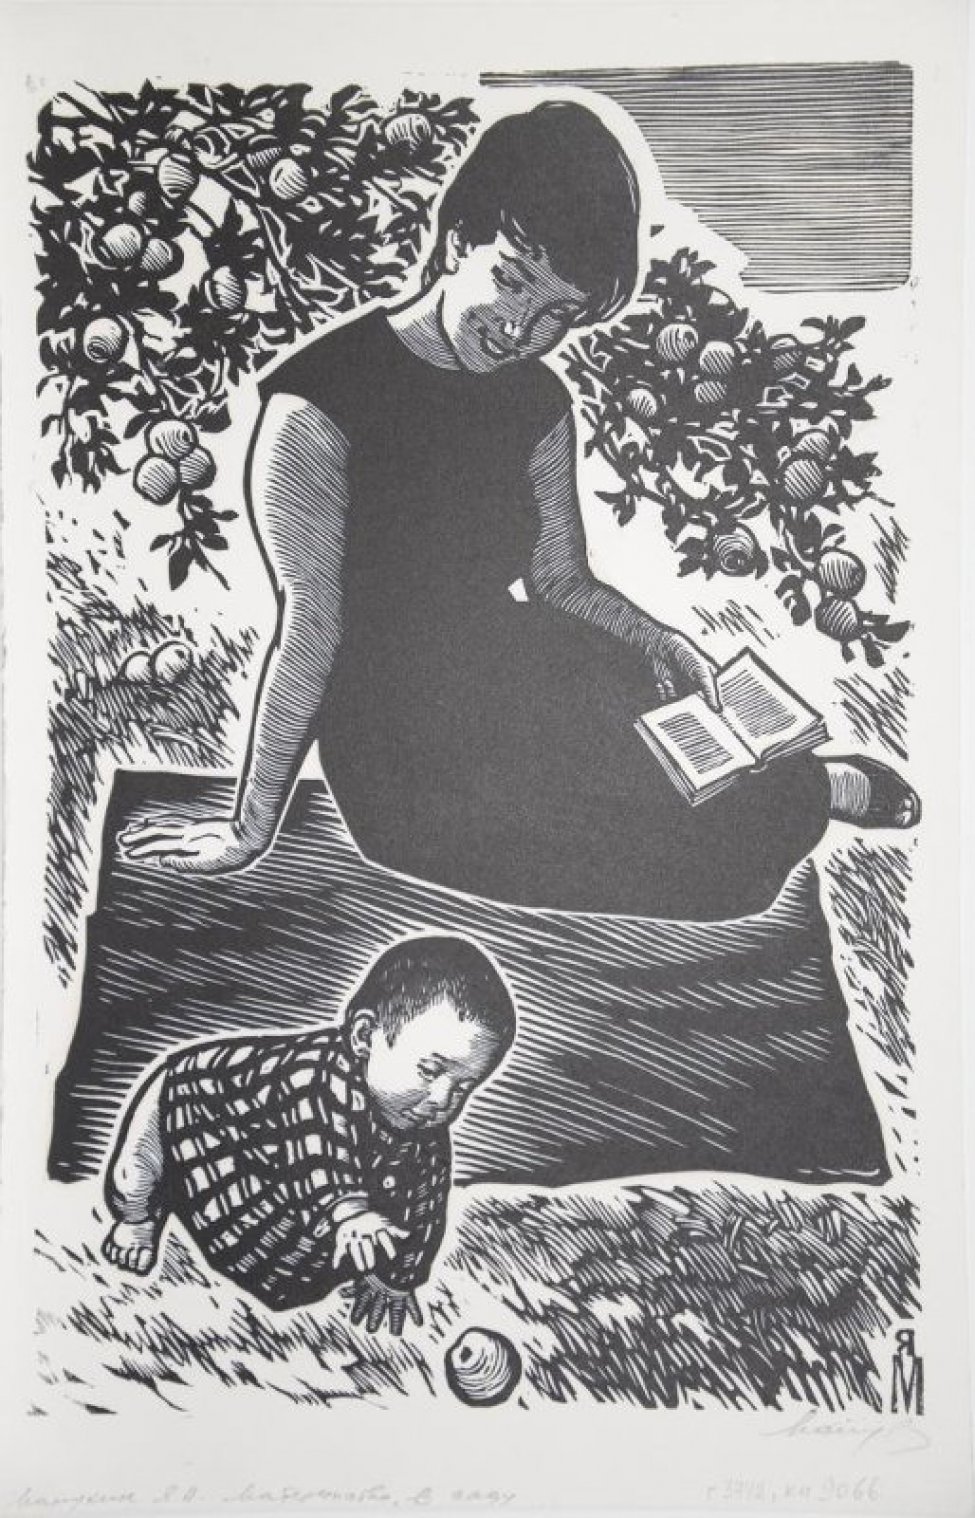 Изображена сидящая молодая женщина в черном платье, правой рукой опирающаяся на коврик, с раскрытой книгой в левой руке. Над ней ветка с фруктами. Около нее в левом углу листа изображен ползущий малыш, по направлению к яблокам.